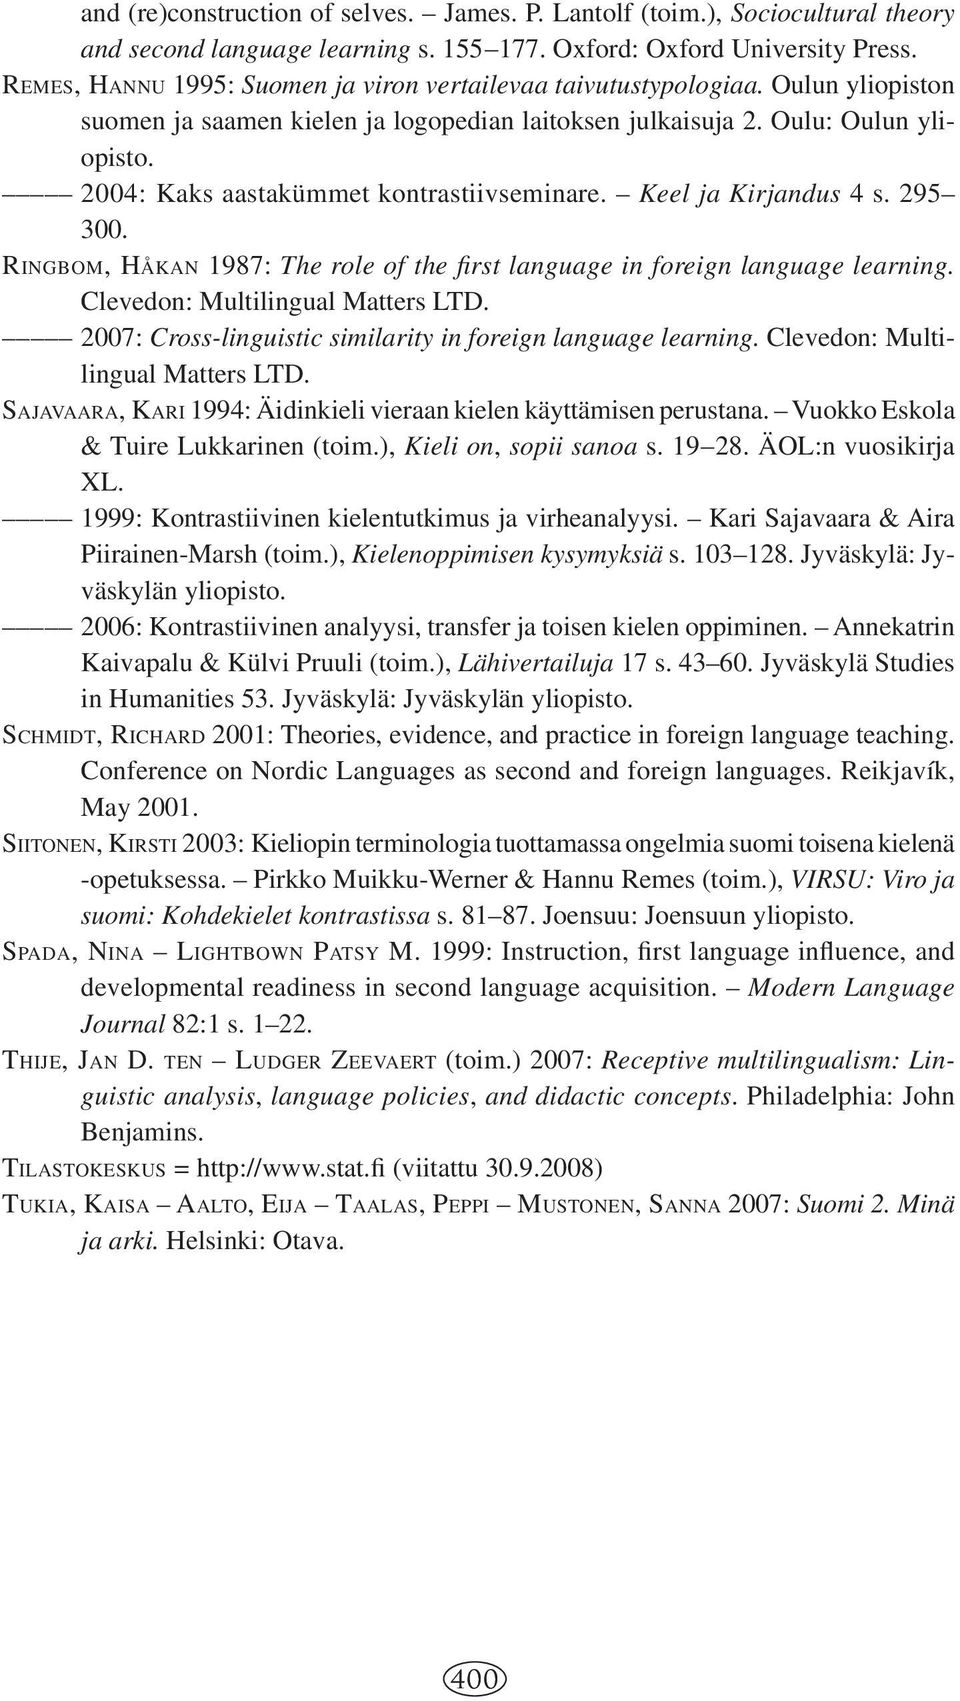 2004: Kaks aastakümmet kontrastiivseminare. Keel ja Kirjandus 4 s. 295 300. RINGBOM, HÅKAN 1987: The role of the fi rst language in foreign language learning. Clevedon: Multilingual Matters LTD.